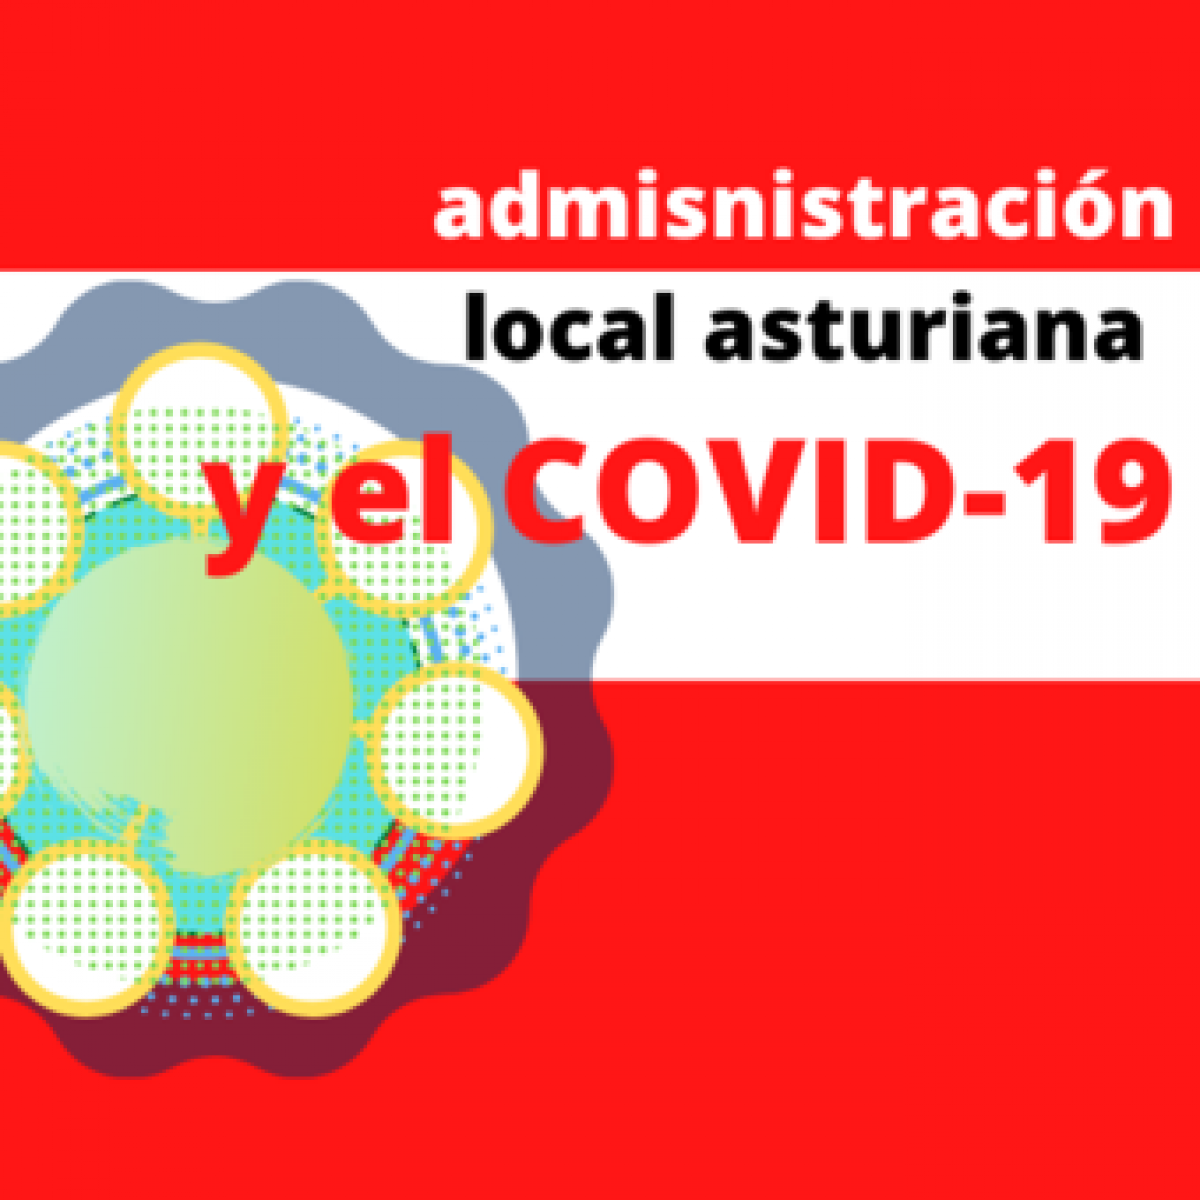 Administración Local Asturiana y el covid-19